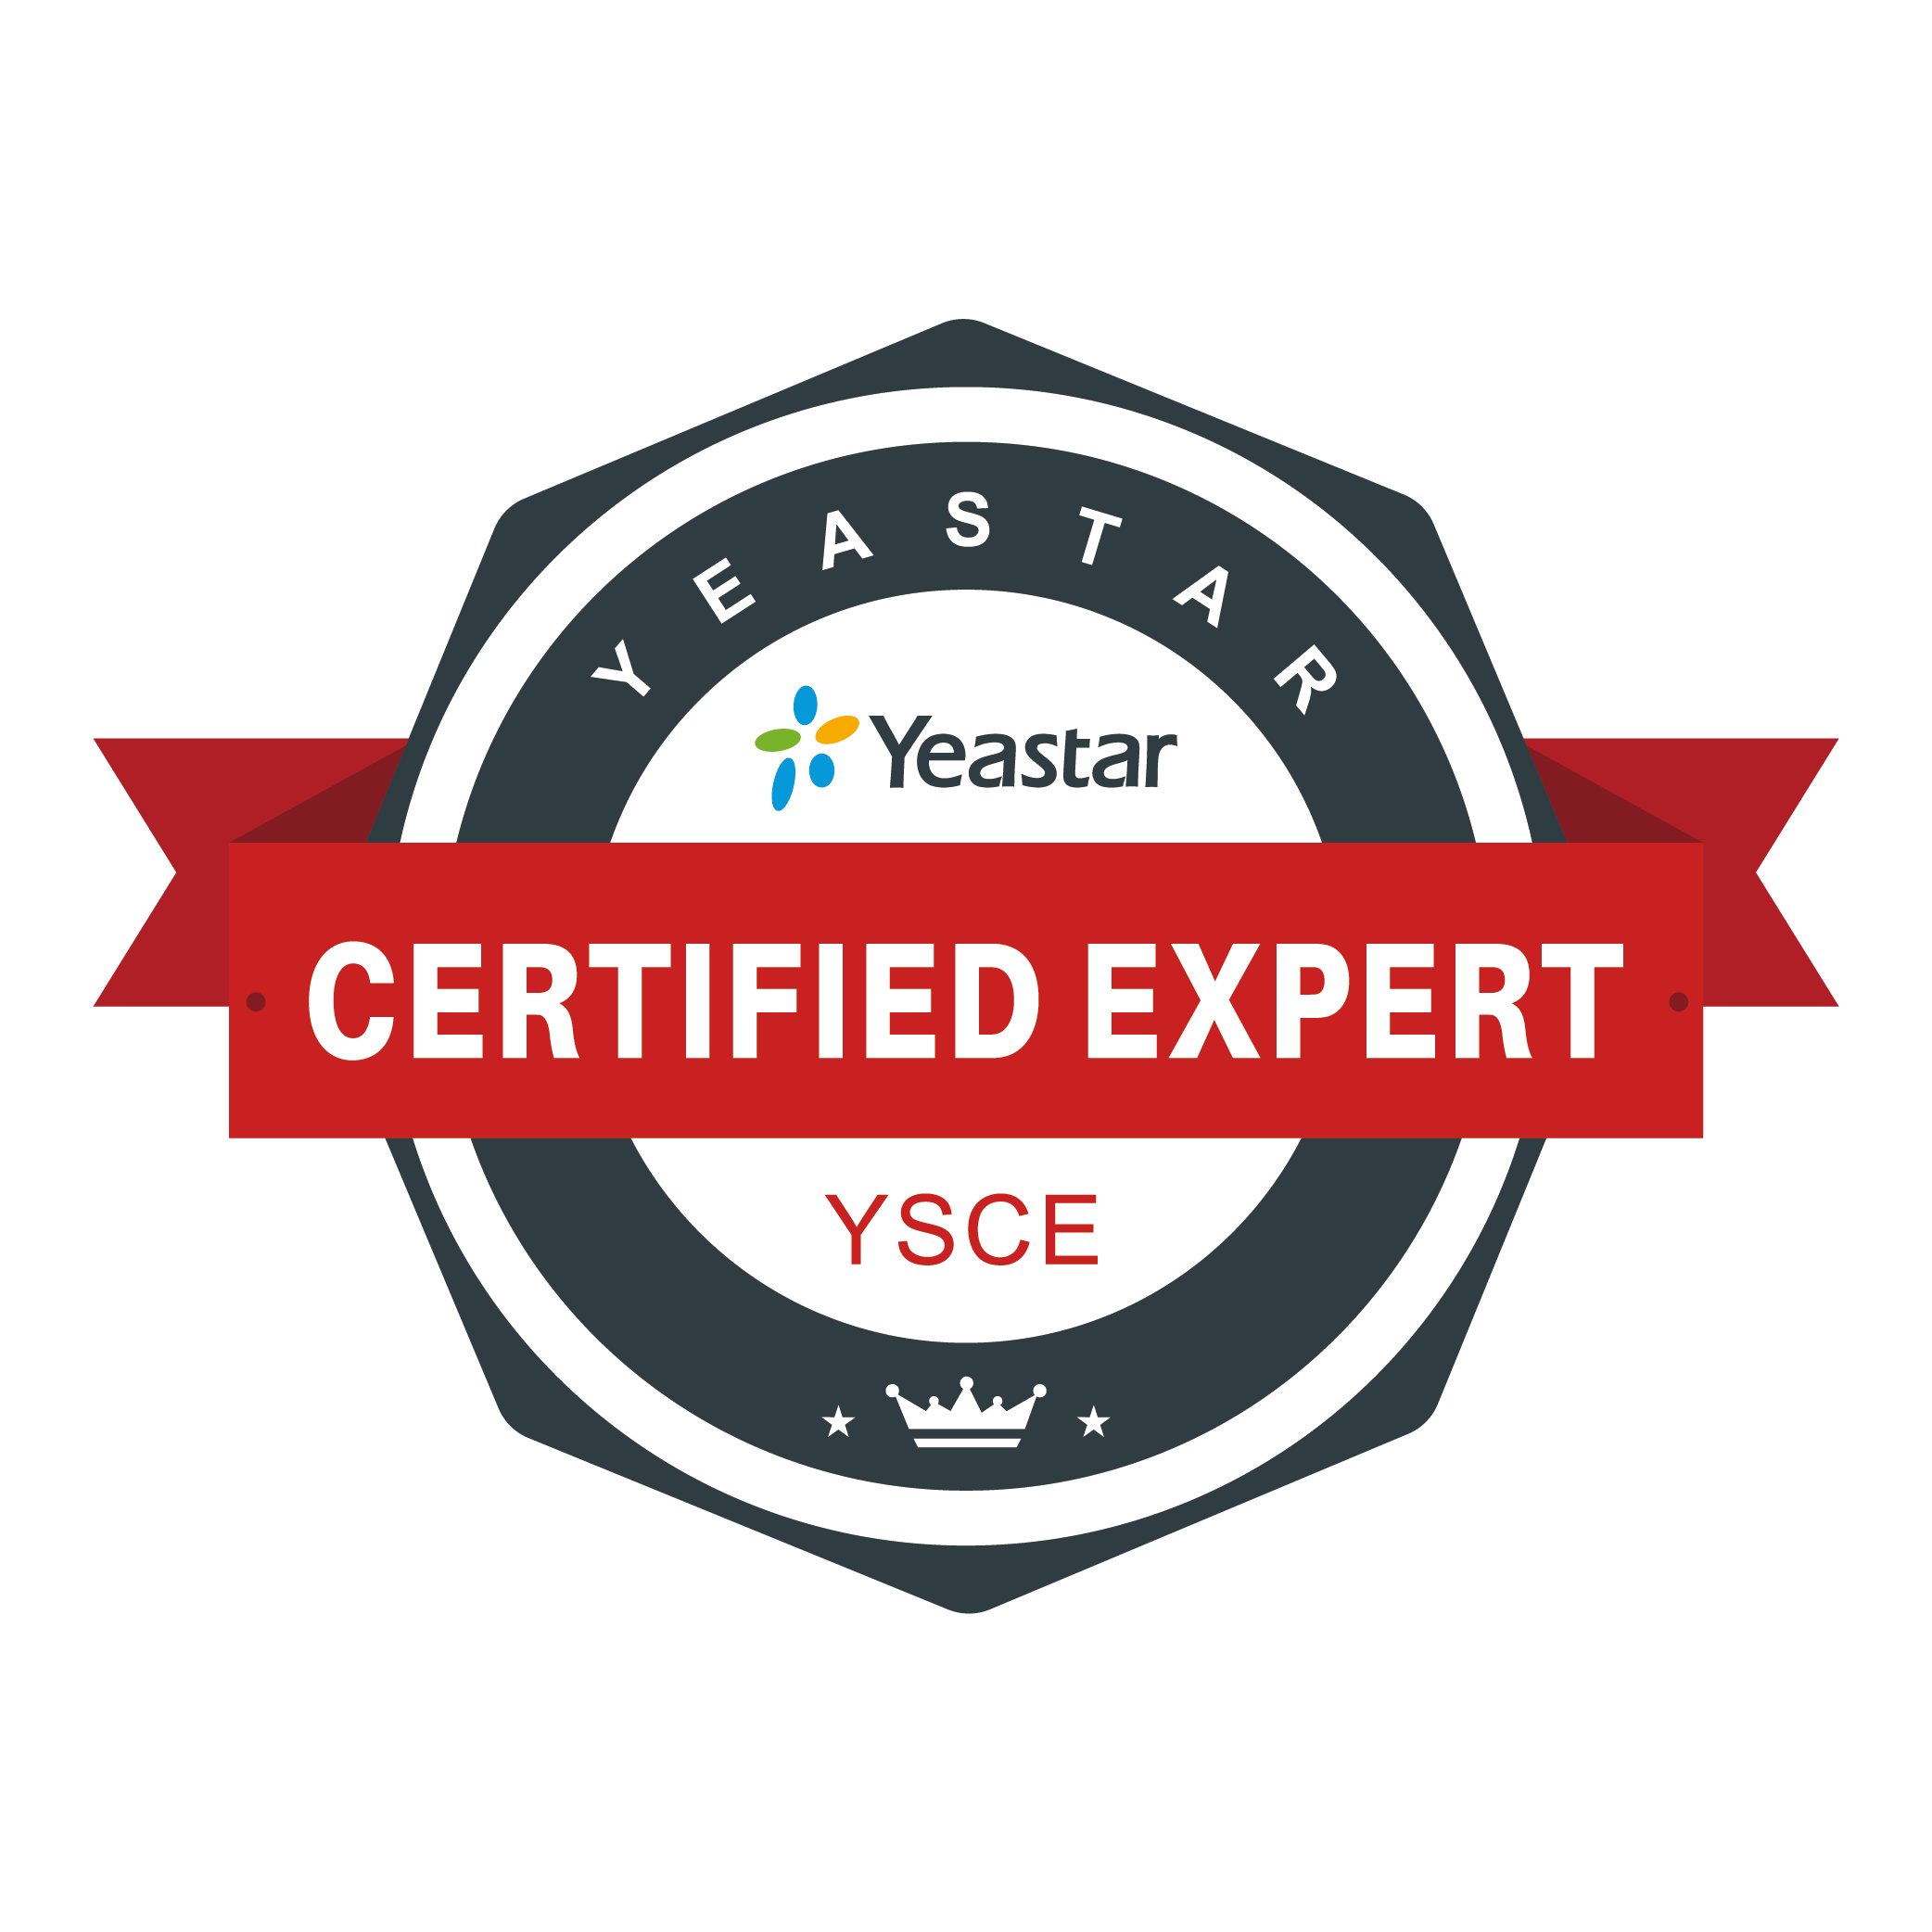 YSCE Yeastar Certified Expert